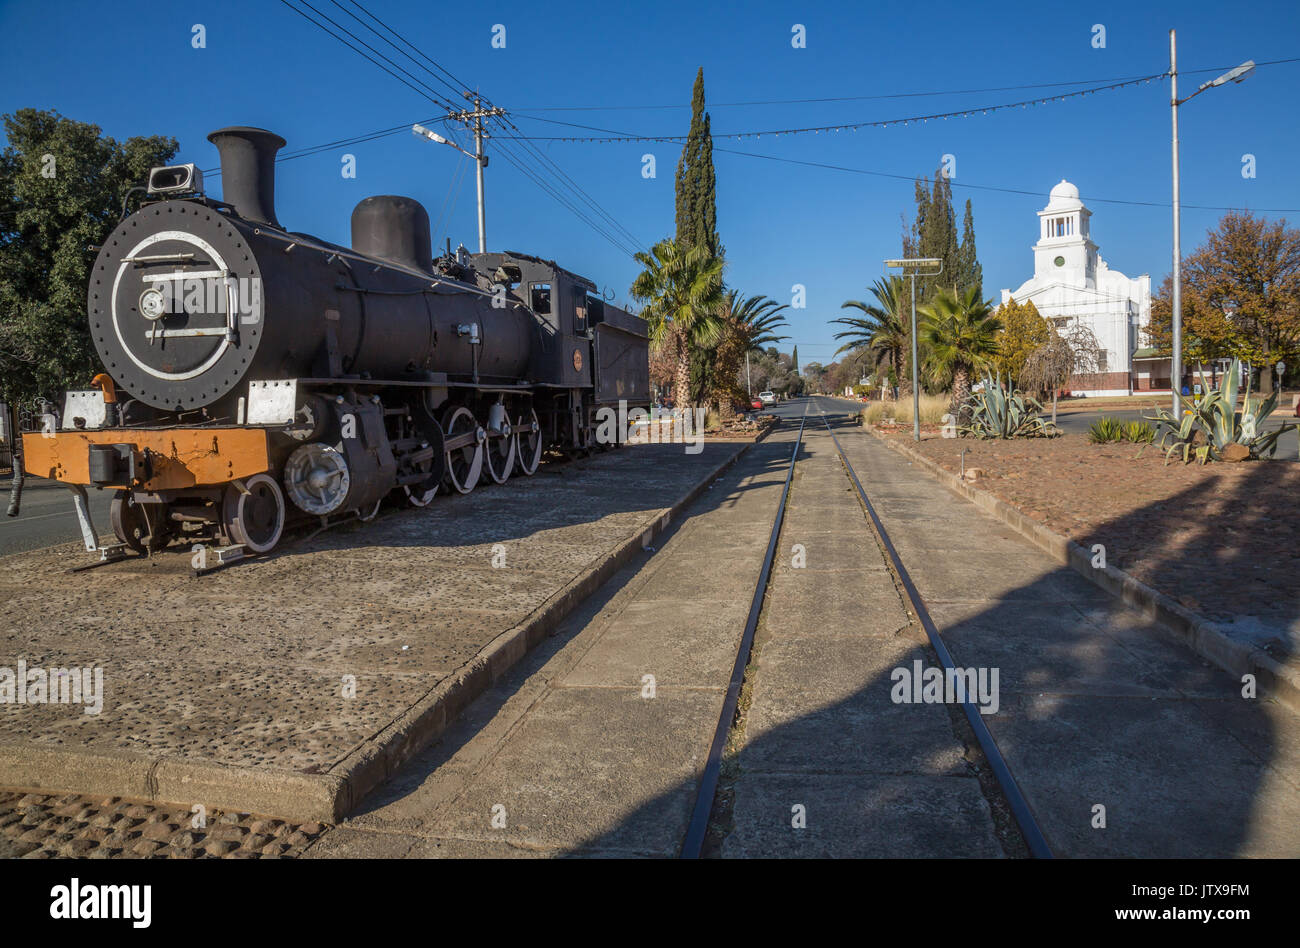 Un plinthed locomotiva a vapore allo stato libero comune di Fauresmith, dove il treno utilizzato per viaggiare lungo la strada principale, l'unica città in Sud Africa w Foto Stock